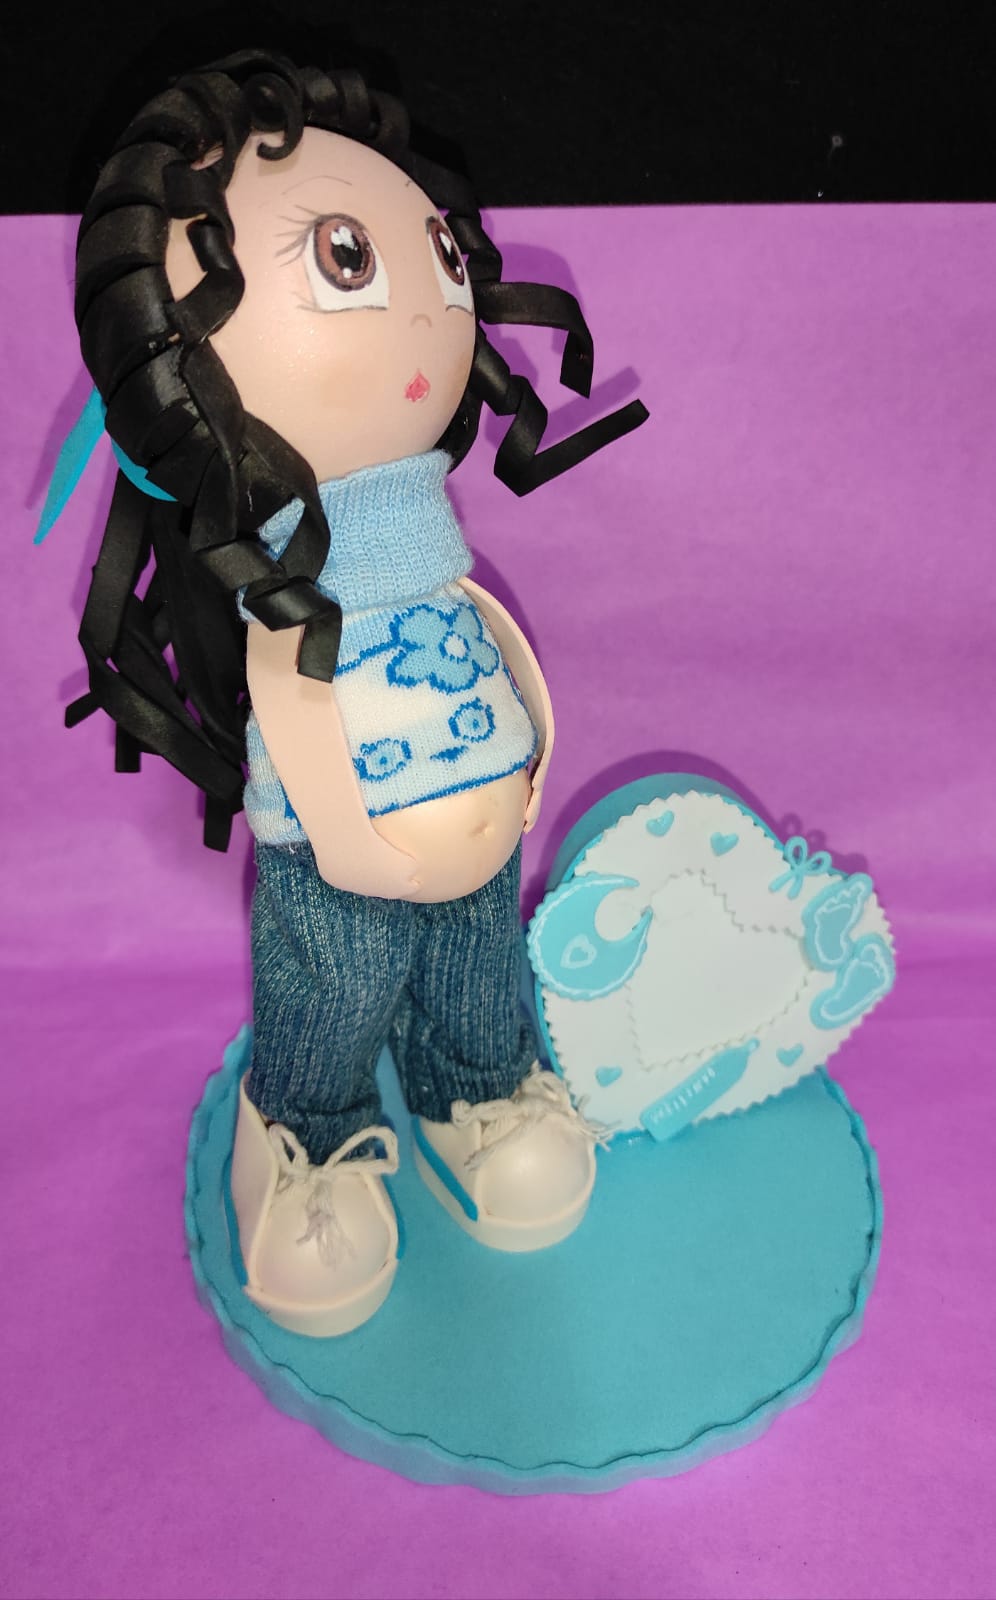 Bambola incinta maglia bianca fiore azzurro con portafoto in crepla - Handmade